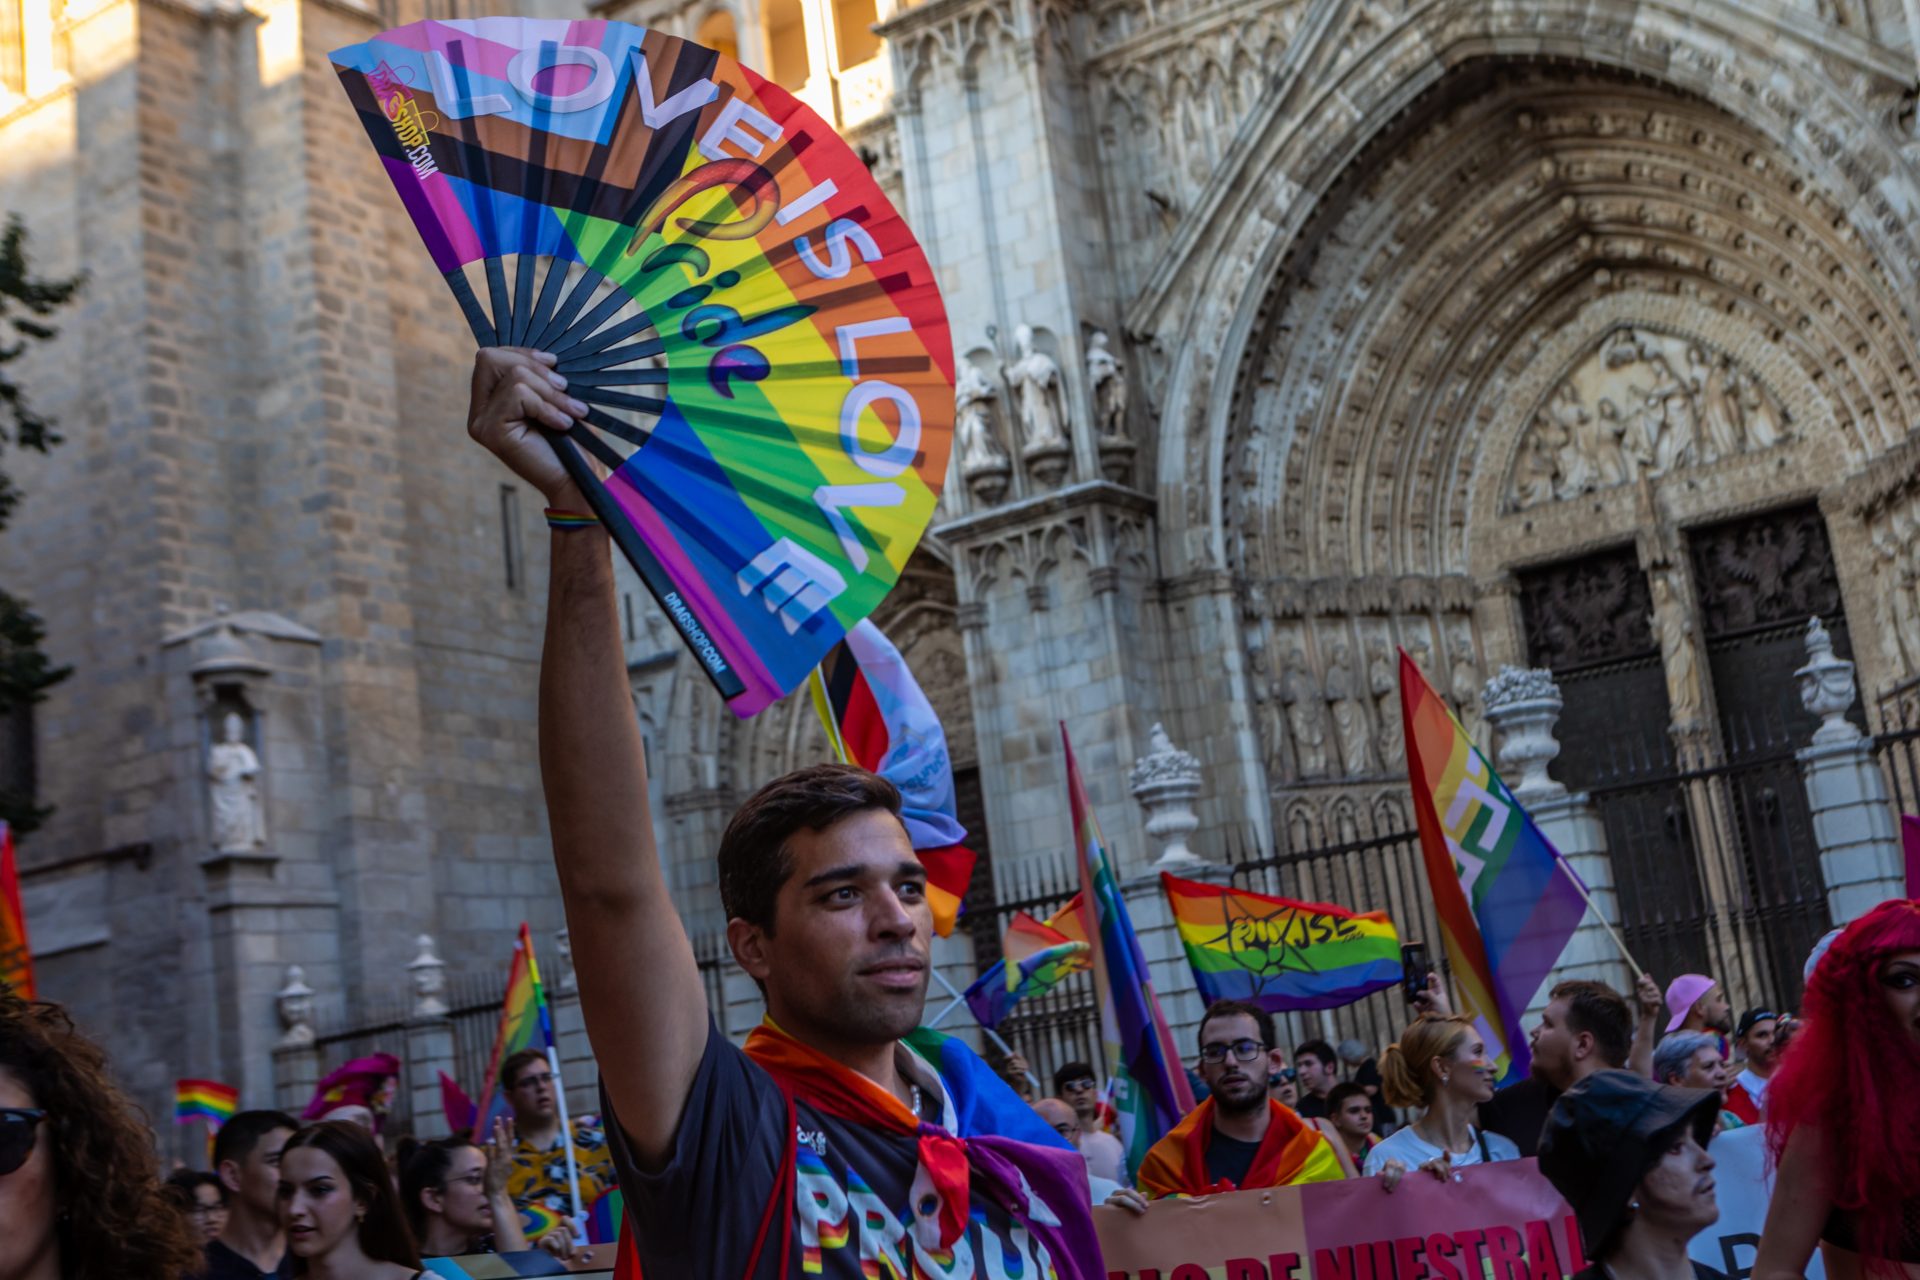 La bandera arcoíris ondea en las Cortes de Castilla-La Mancha en apoyo al colectivo LGTBI